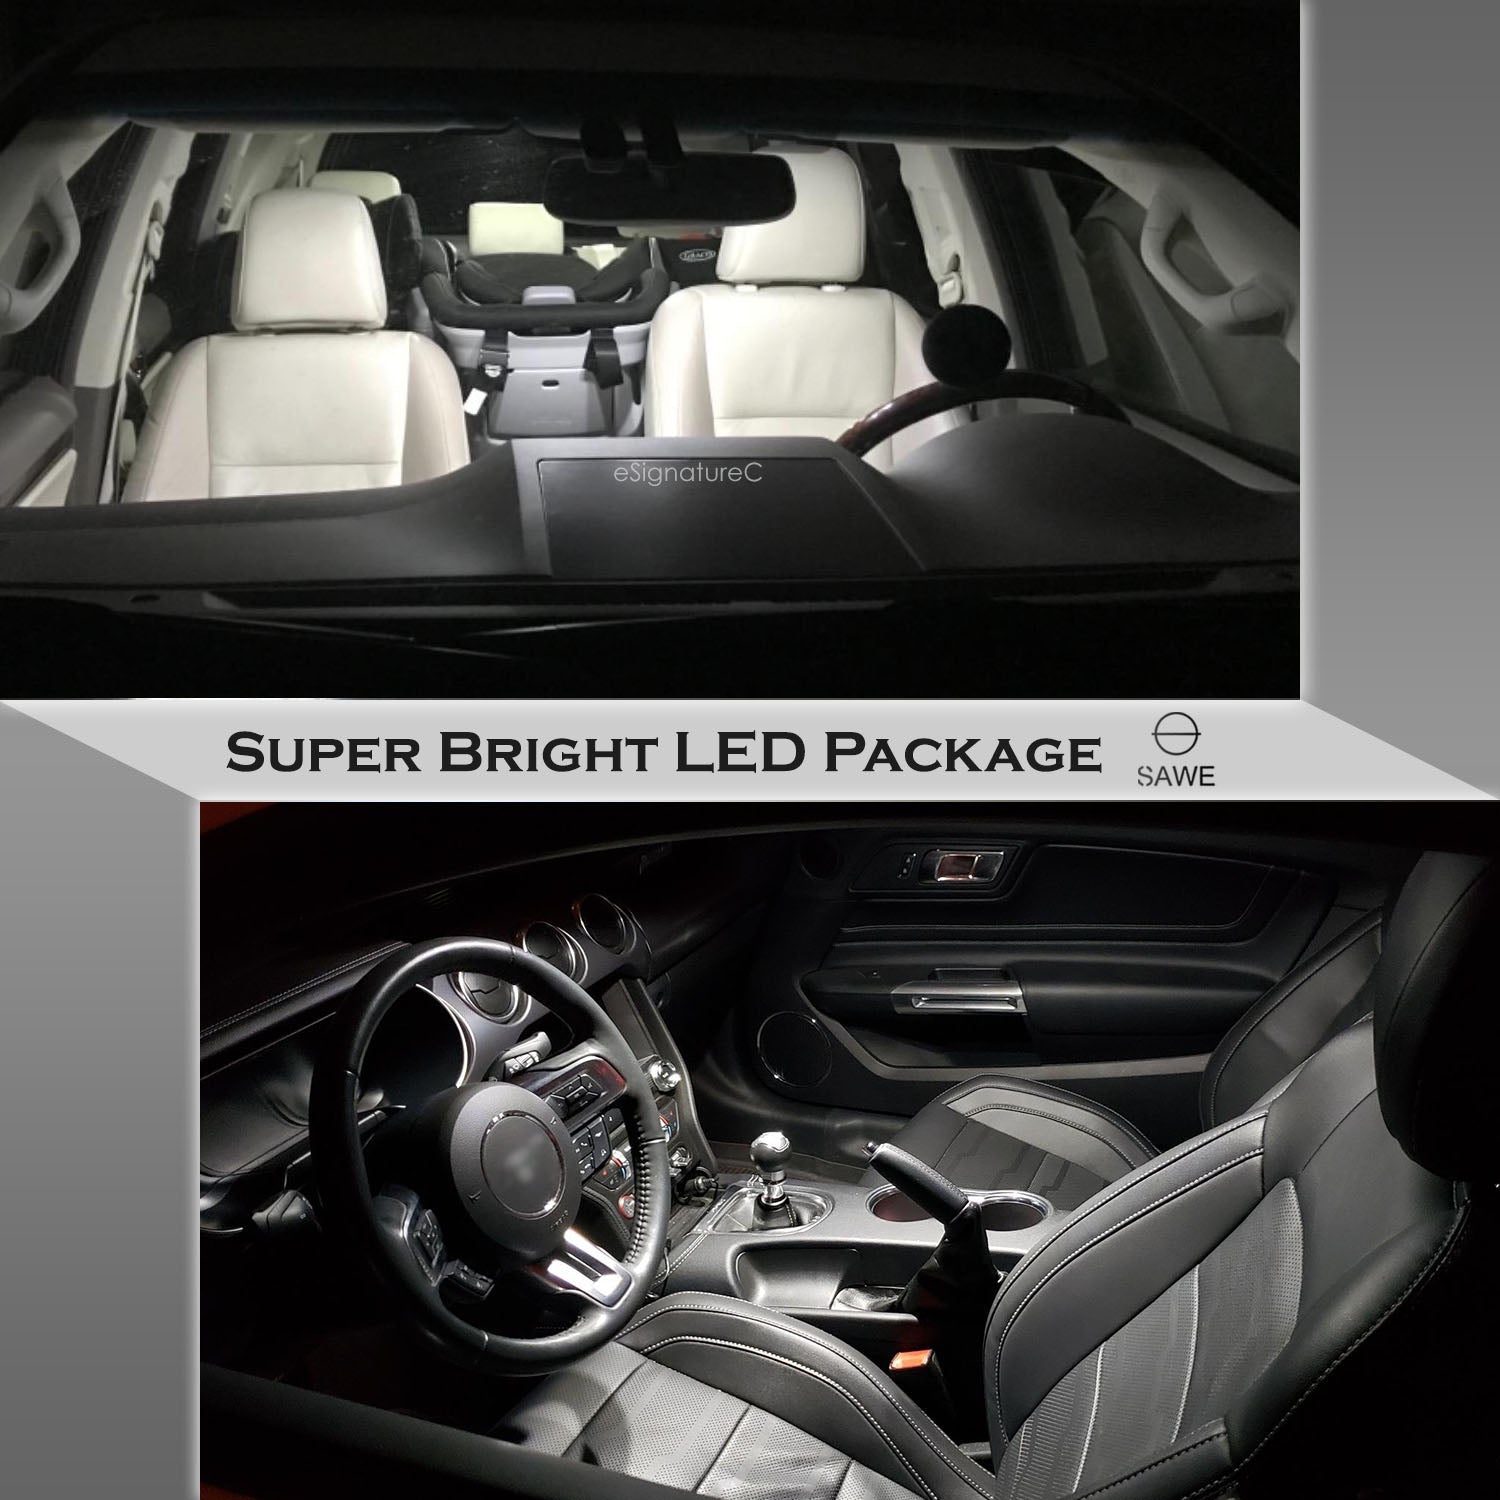 For Honda Ridgeline Interior LED Lights - Dome & Map Lights Package Kit for 2006 - 2014 - White